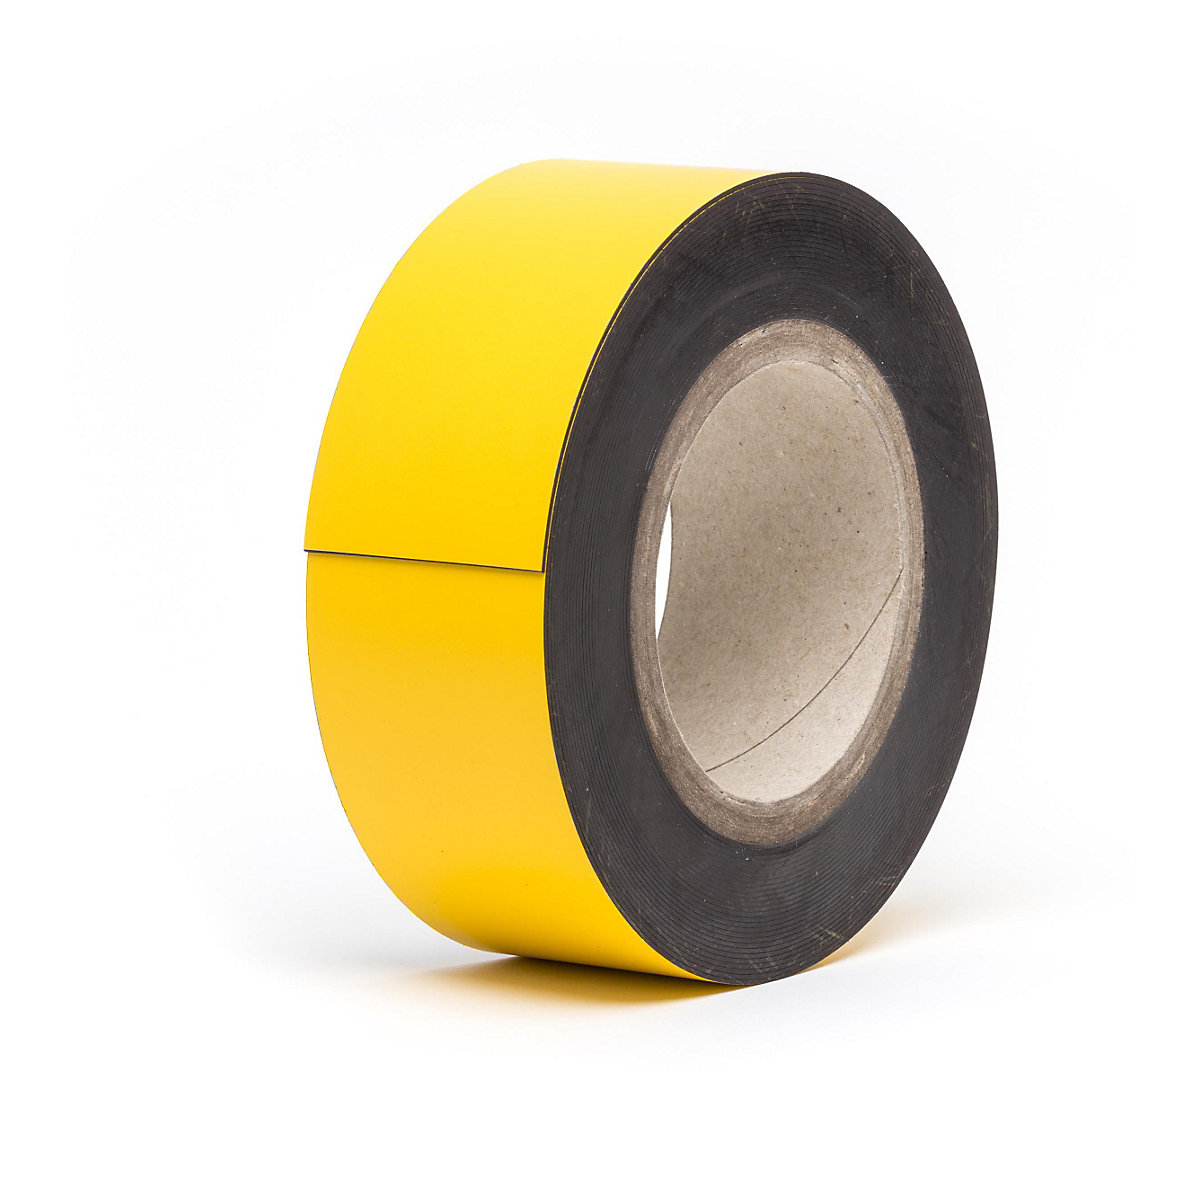 Rótulos magnéticos para almacén, mercancía en rollo, amarillo, altura 50 mm, longitud de rollo 10 m-7